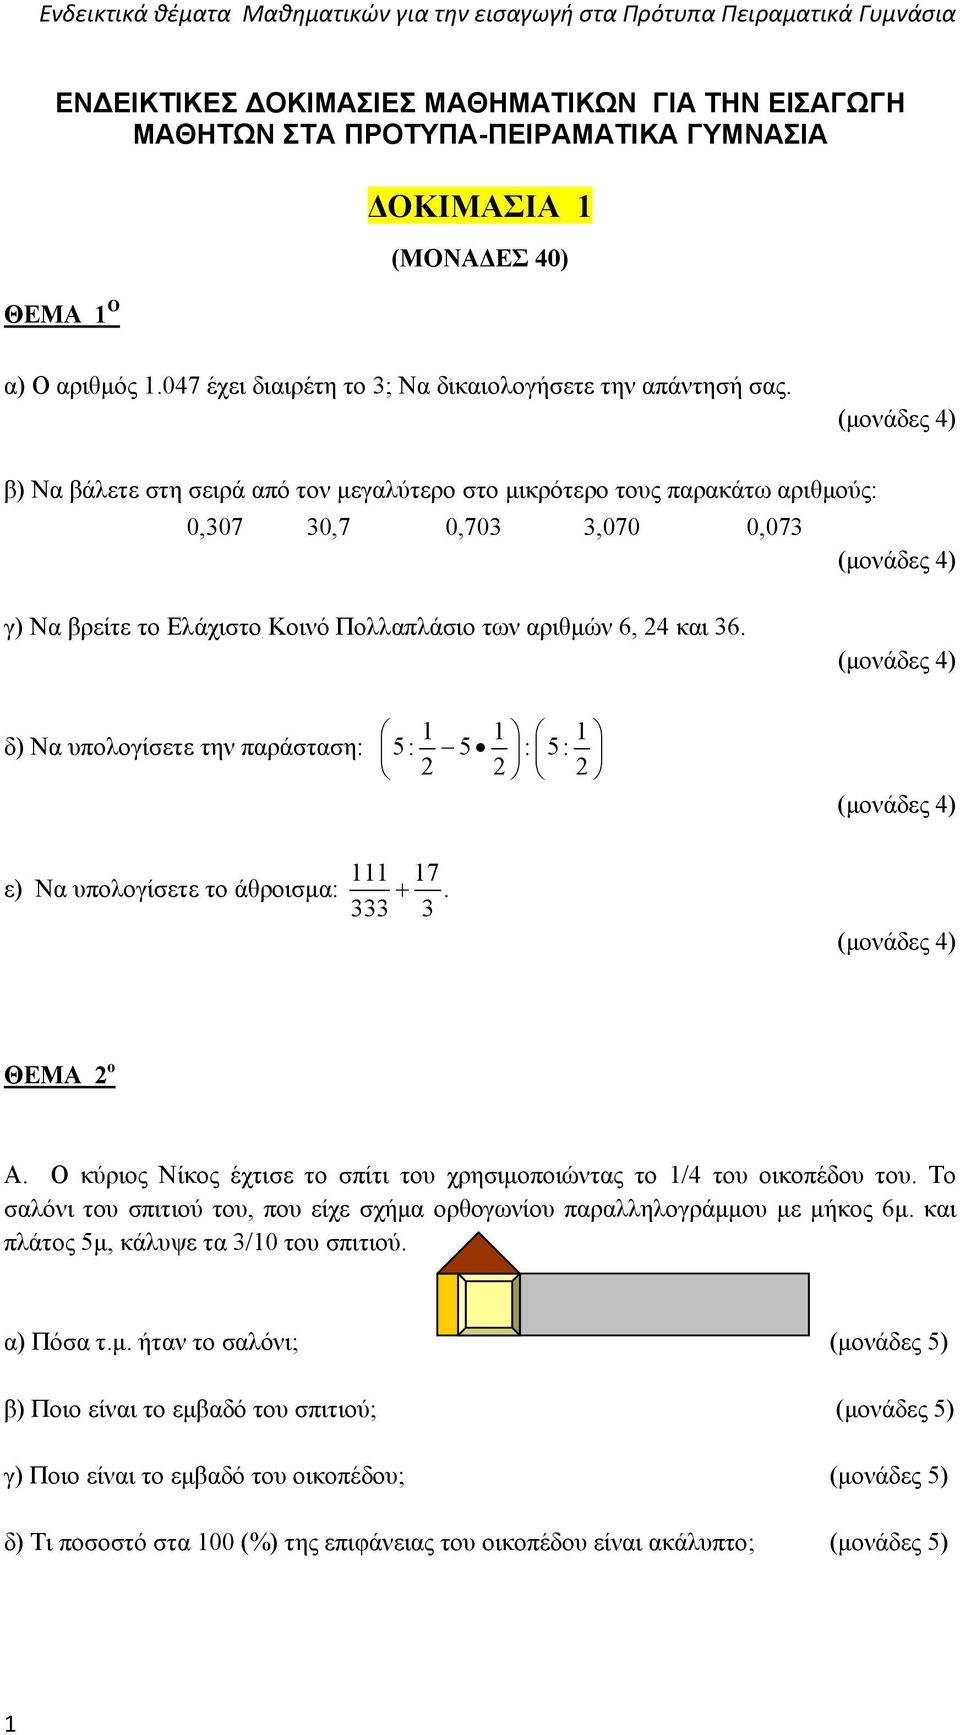 Ενδεικτικά θέματα Μαθηματικών για την εισαγωγή στα Πρότυπα Πειραματικά  Γυμνάσια - PDF ΔΩΡΕΑΝ Λήψη